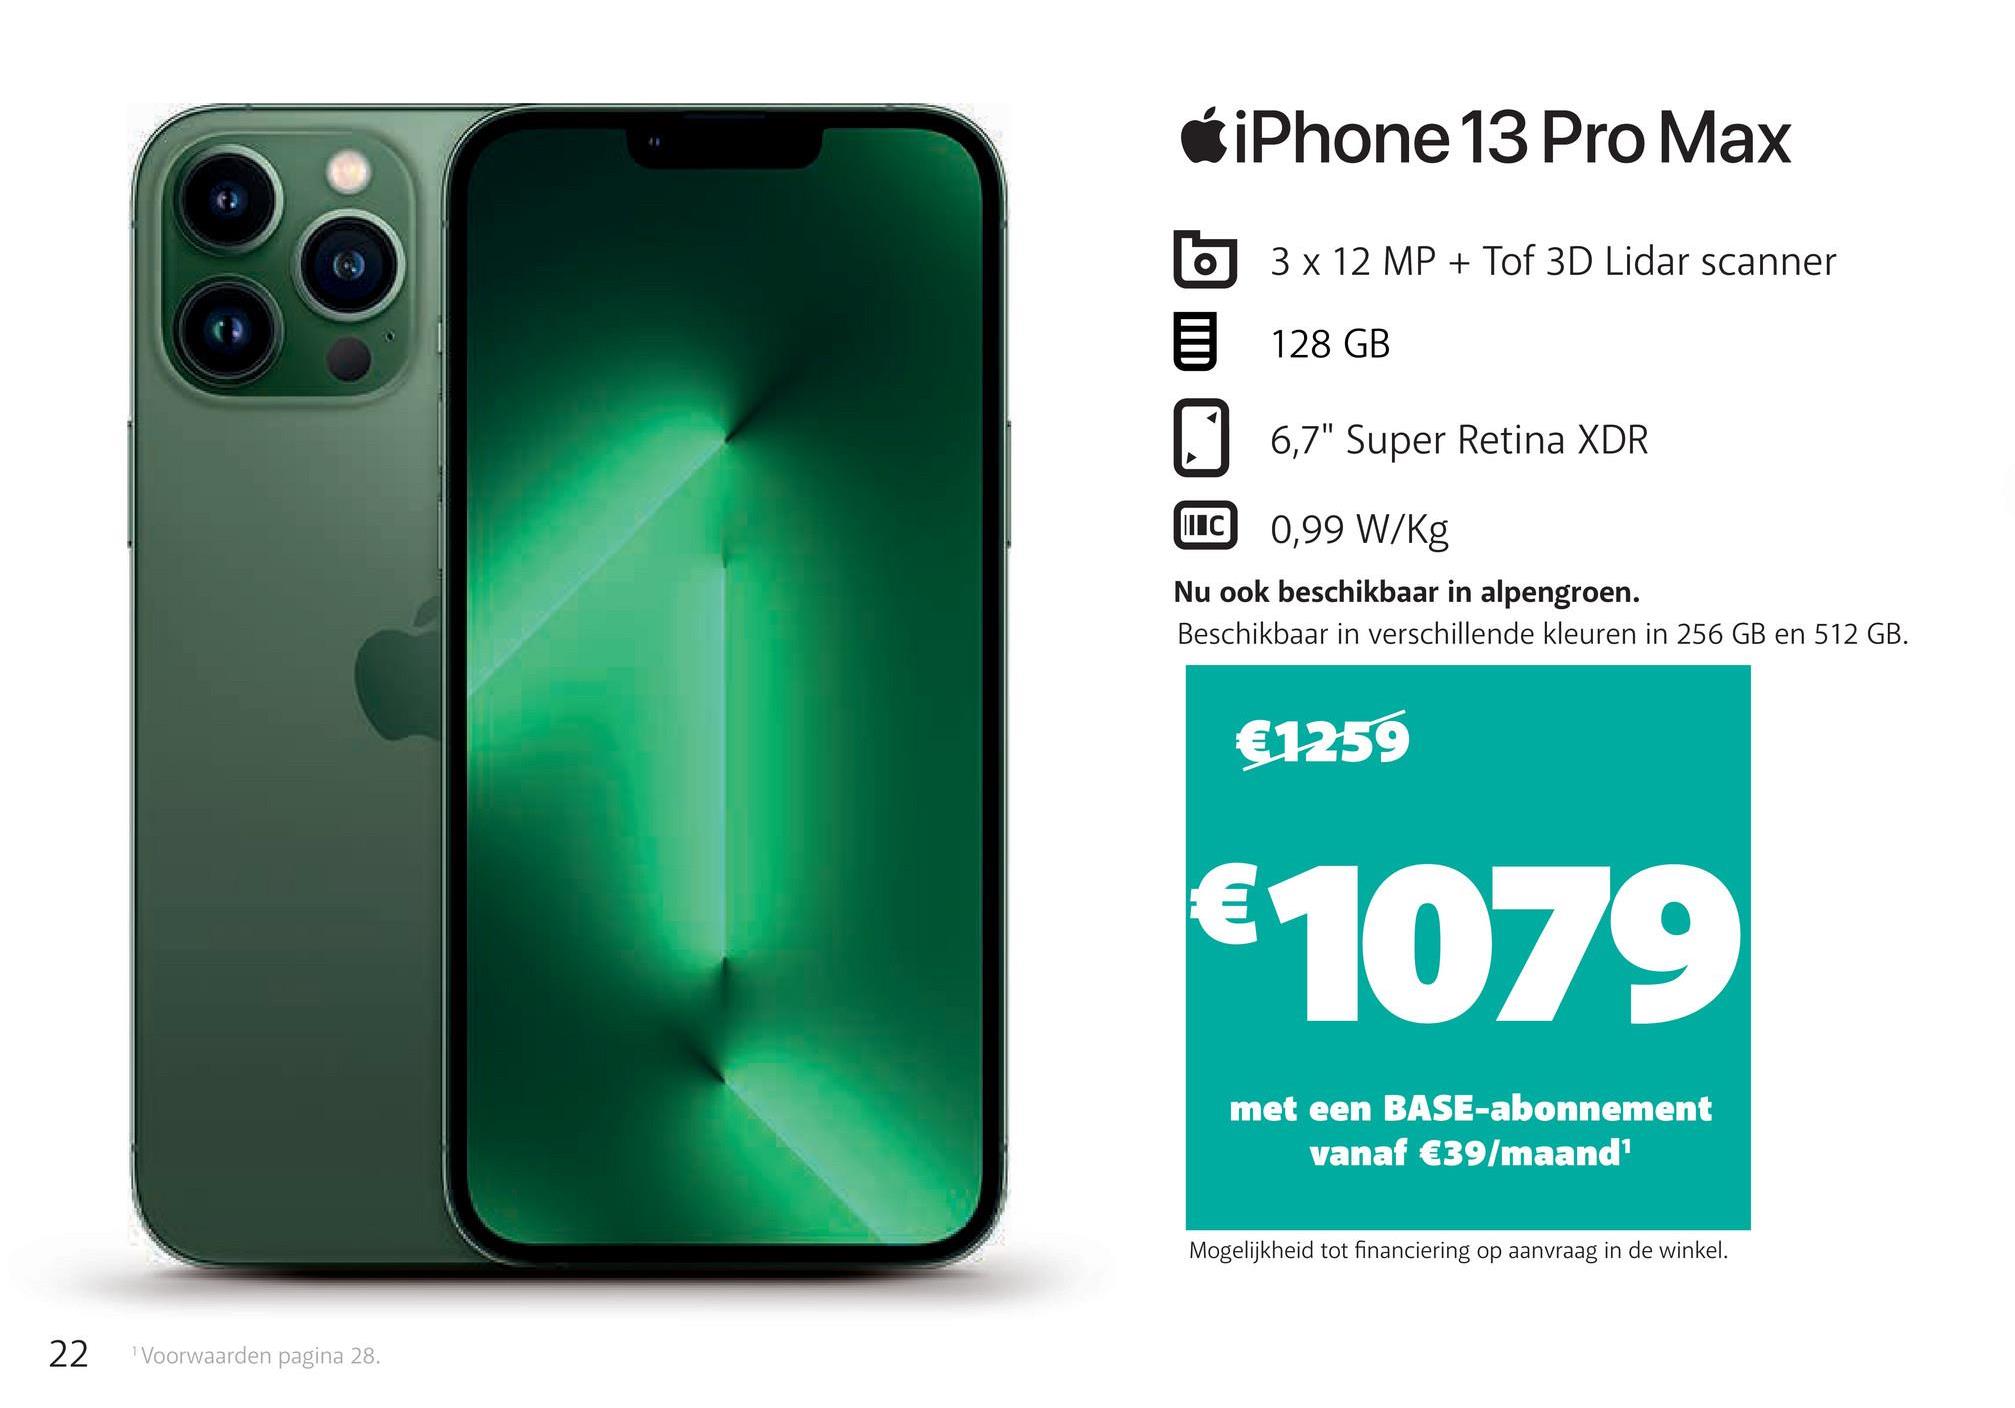 iPhone 13 Pro Max
3 x 12 MP + Tof 3D Lidar scanner
128 GB
6,7" Super Retina XDR
ПІС
0,99 W/Kg
Nu ook beschikbaar in alpengroen.
Beschikbaar in verschillende kleuren in 256 GB en 512 GB.
€1259
€1079
met een BASE-abonnement
vanaf €39/maand1
Mogelijkheid tot financiering op aanvraag in de winkel.
22
Voorwaarden pagina 28.
